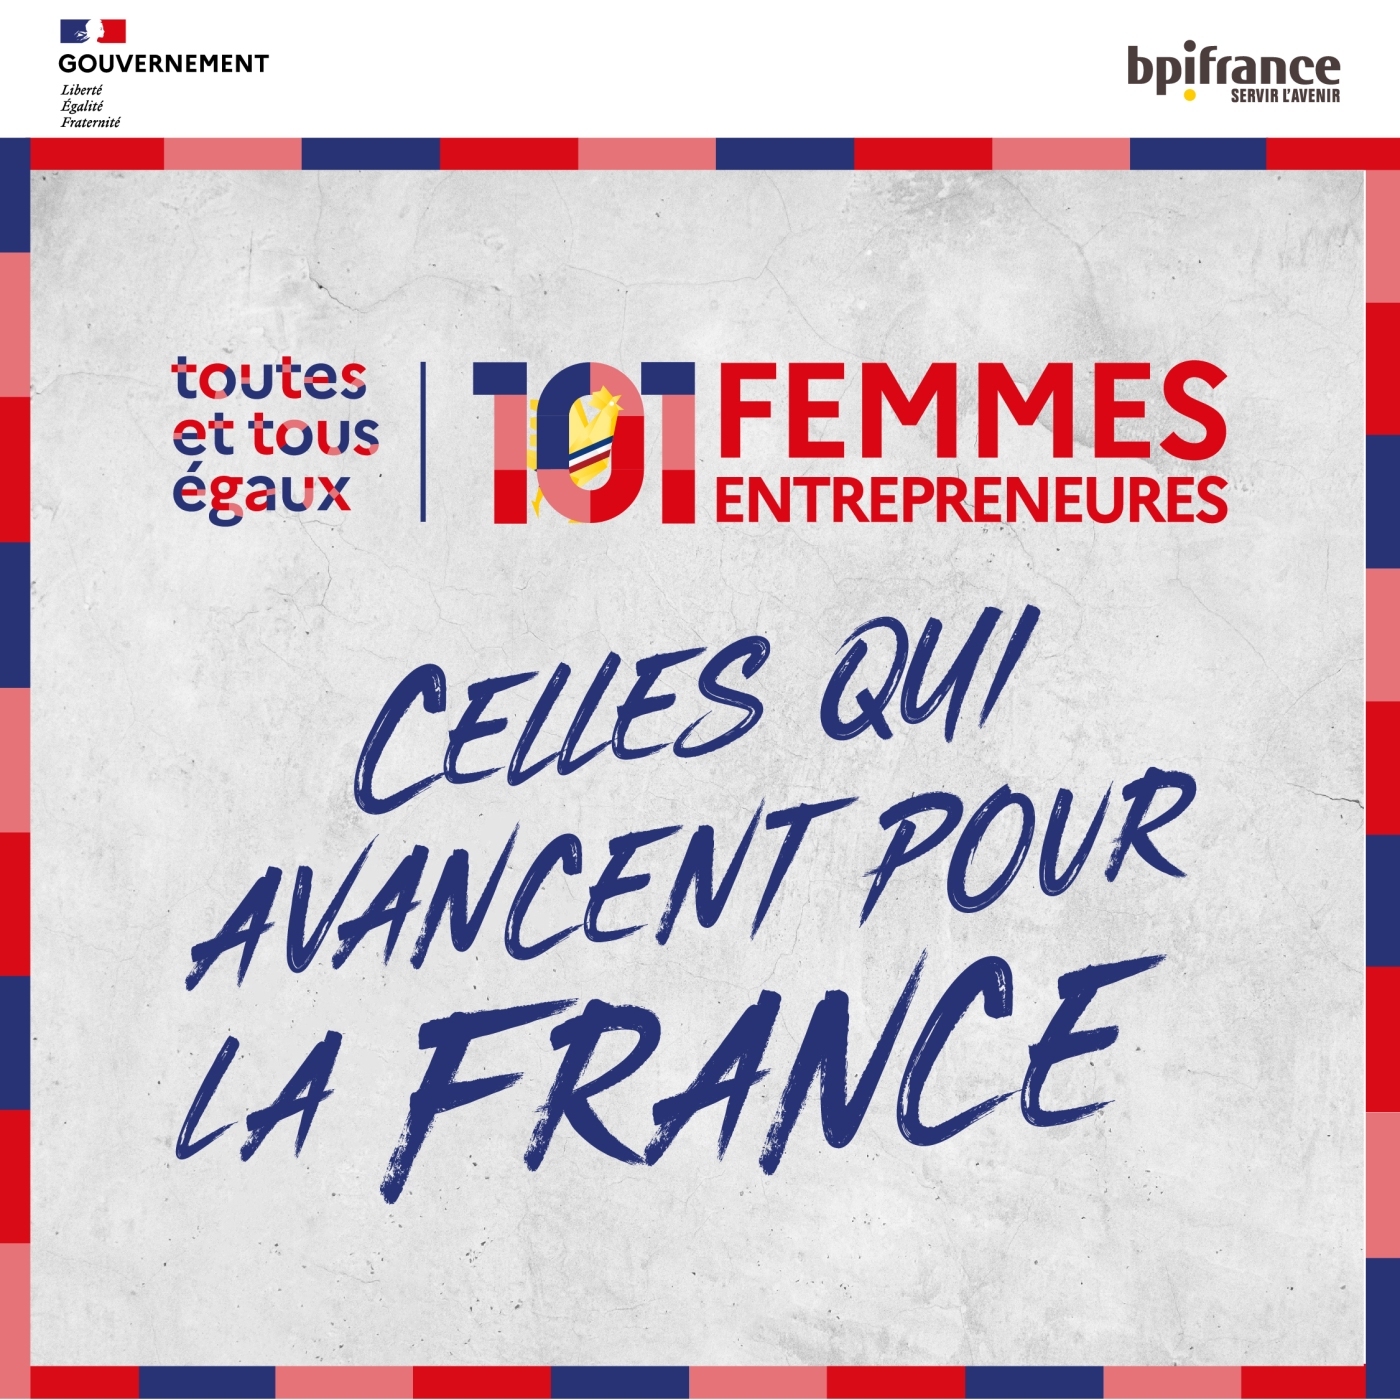 101 Femmes Entrepreneures, celles qui avancent pour la France